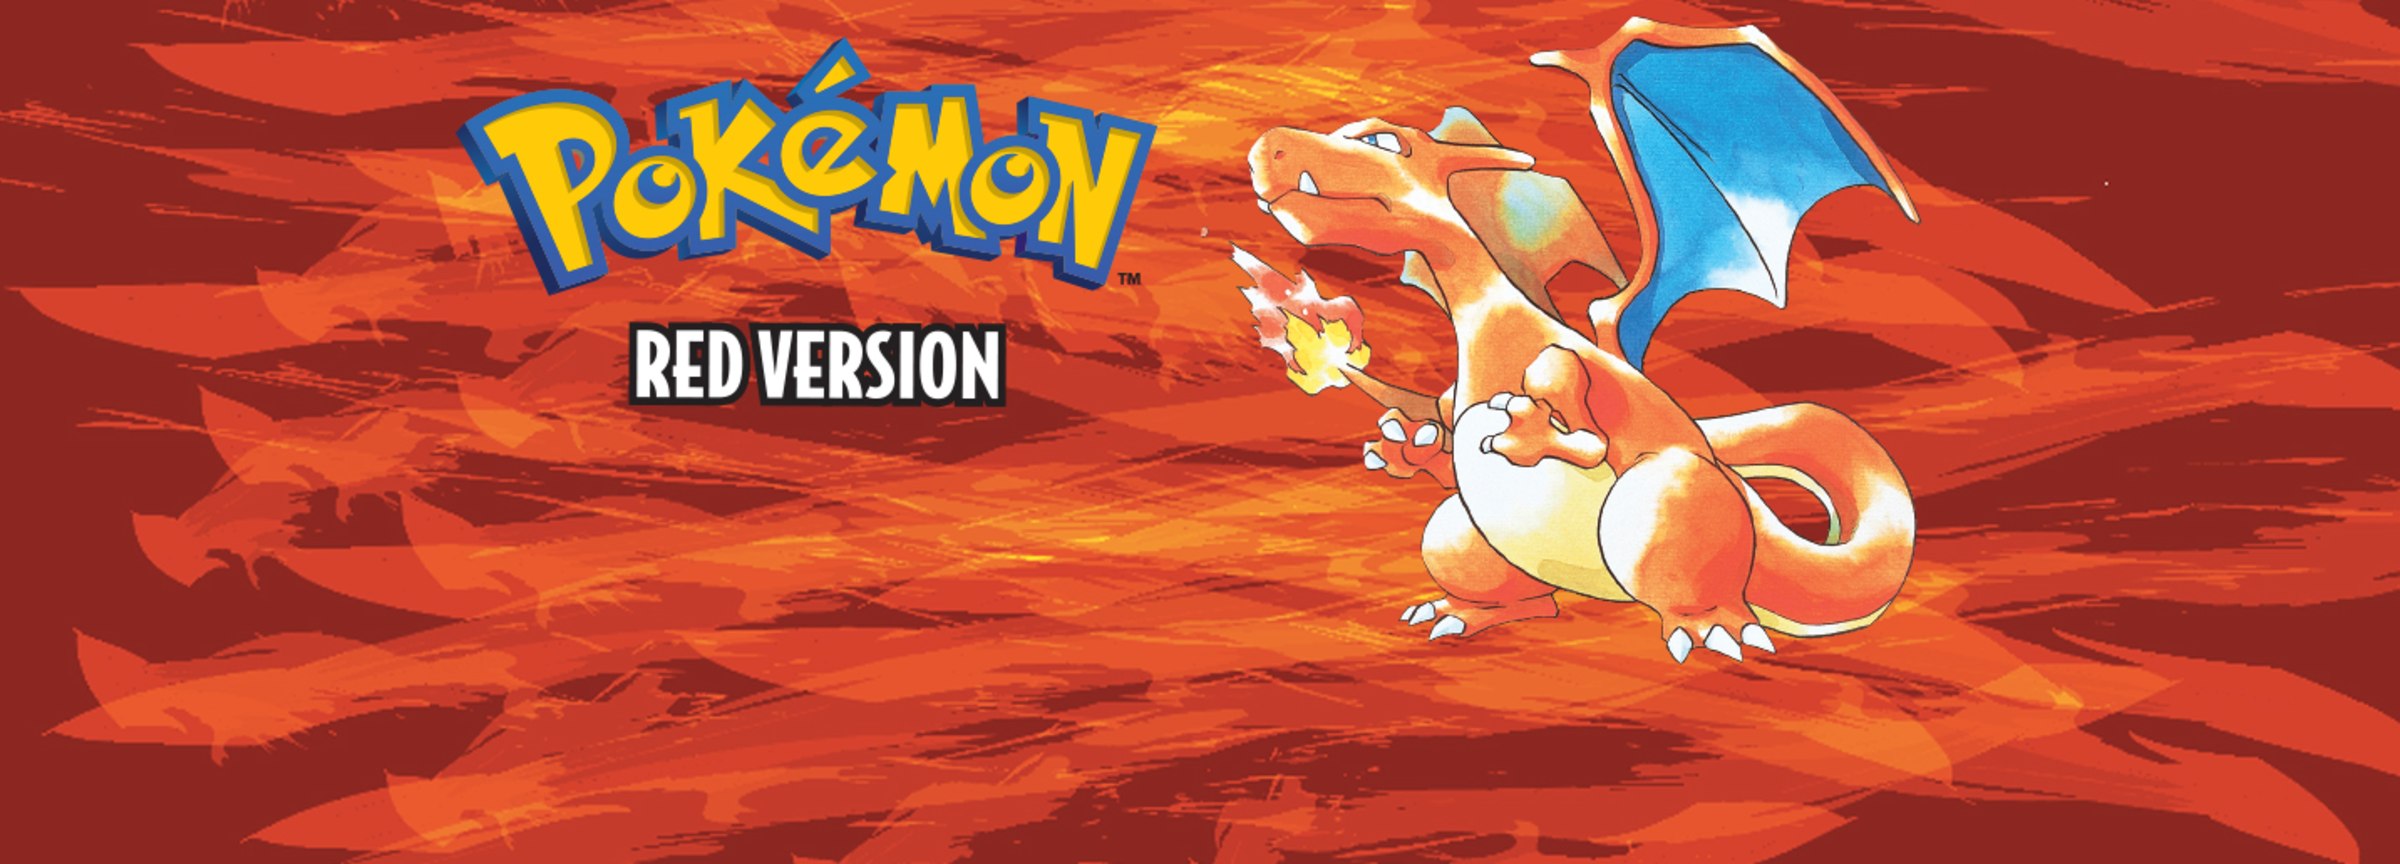 Pokémon Red for Nintendo 3DS - Nintendo Official